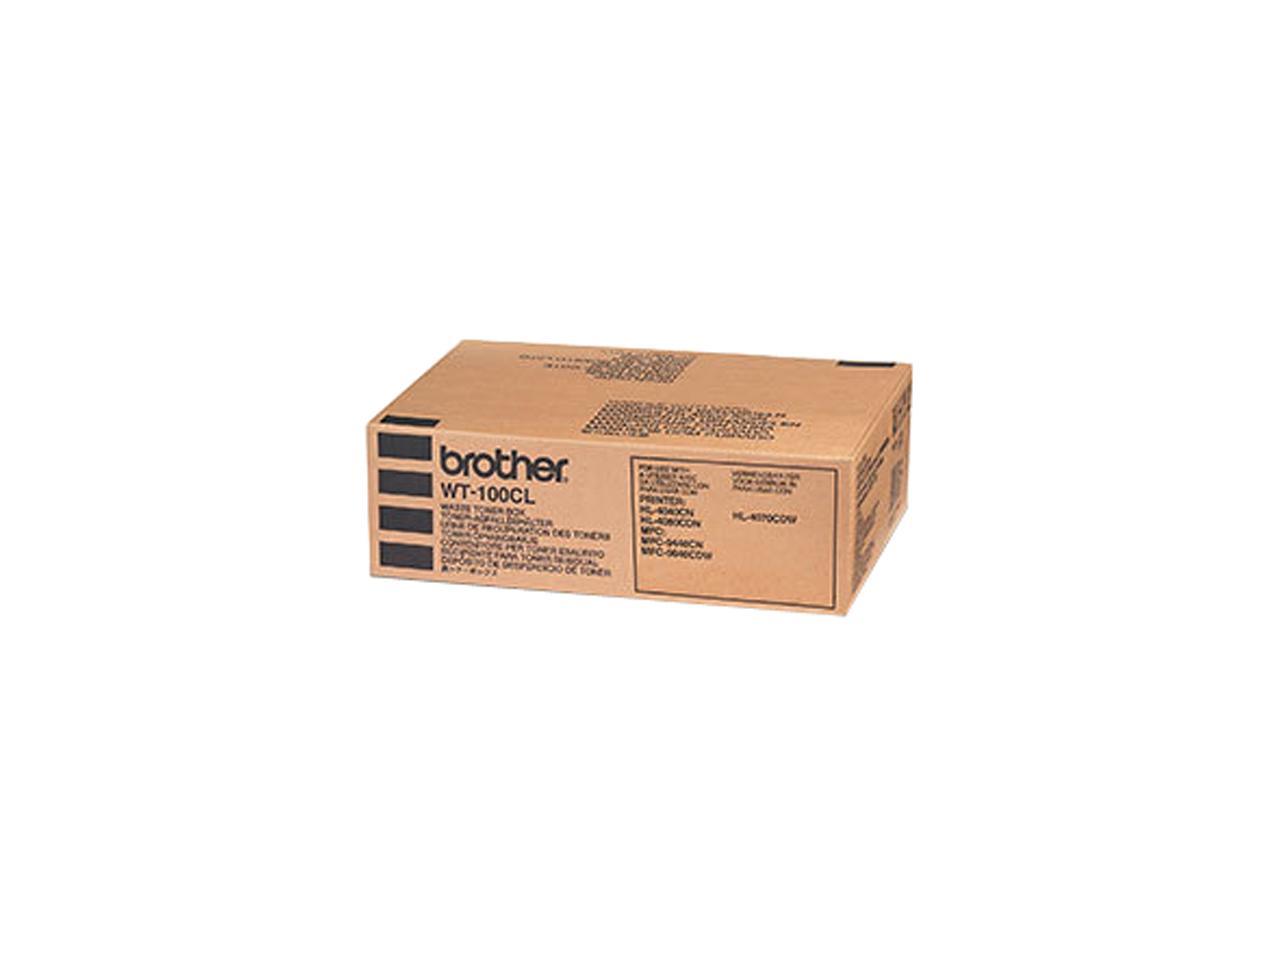 Brother WT100CL Waste Toner Box for HL-4040CN, HL-4070CDW, MFC-9440CN